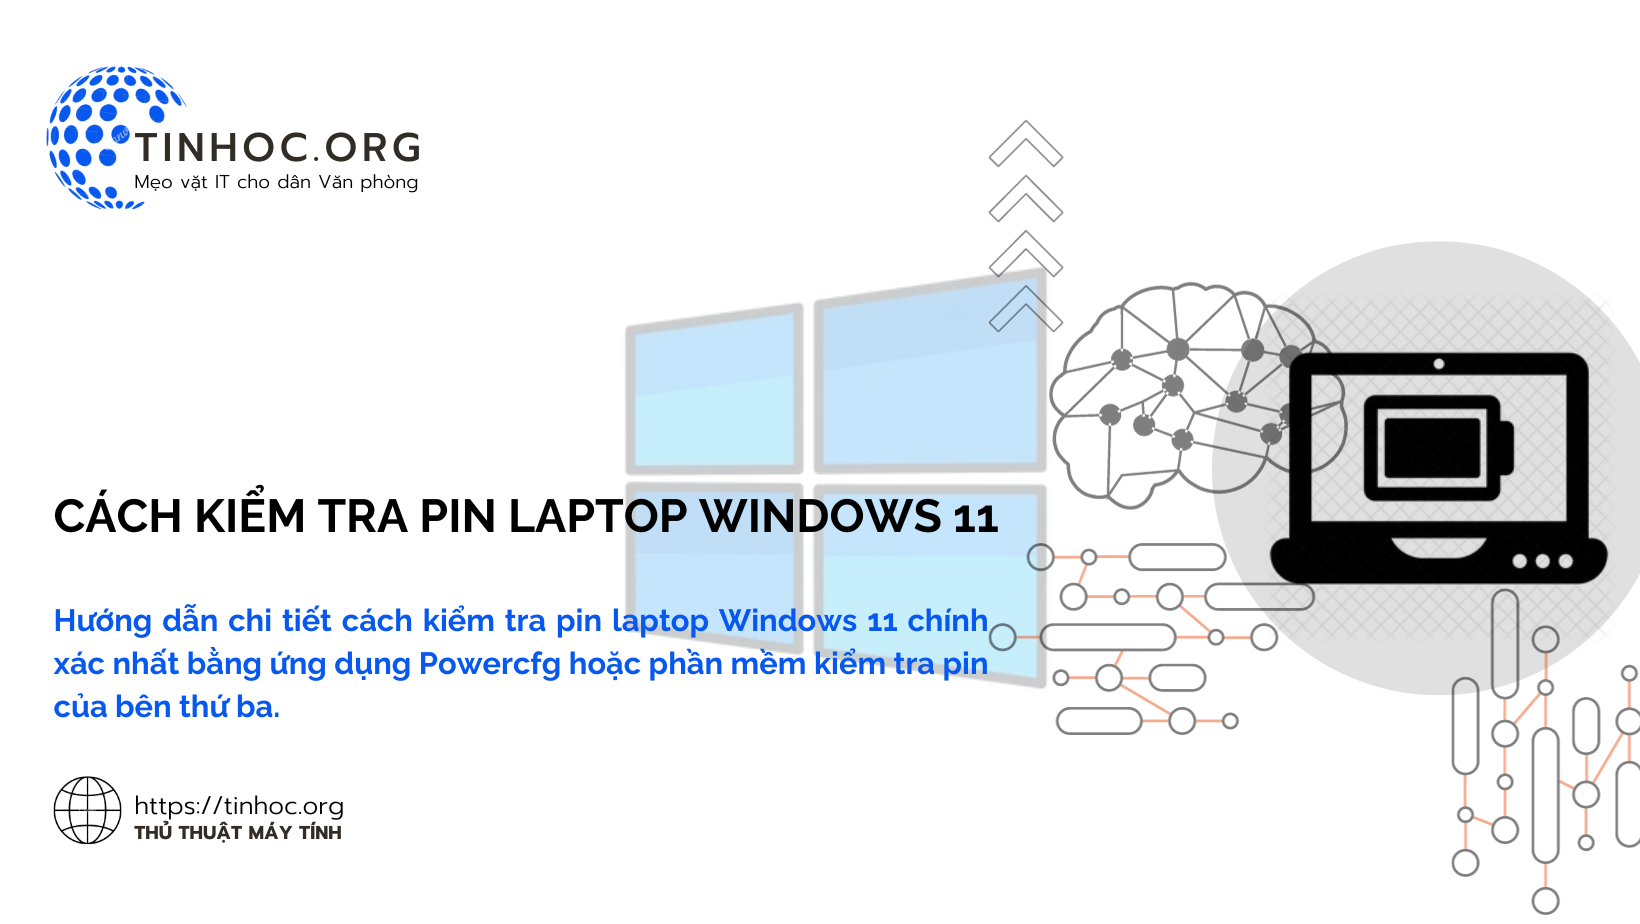 Cách kiểm tra pin laptop Windows 11